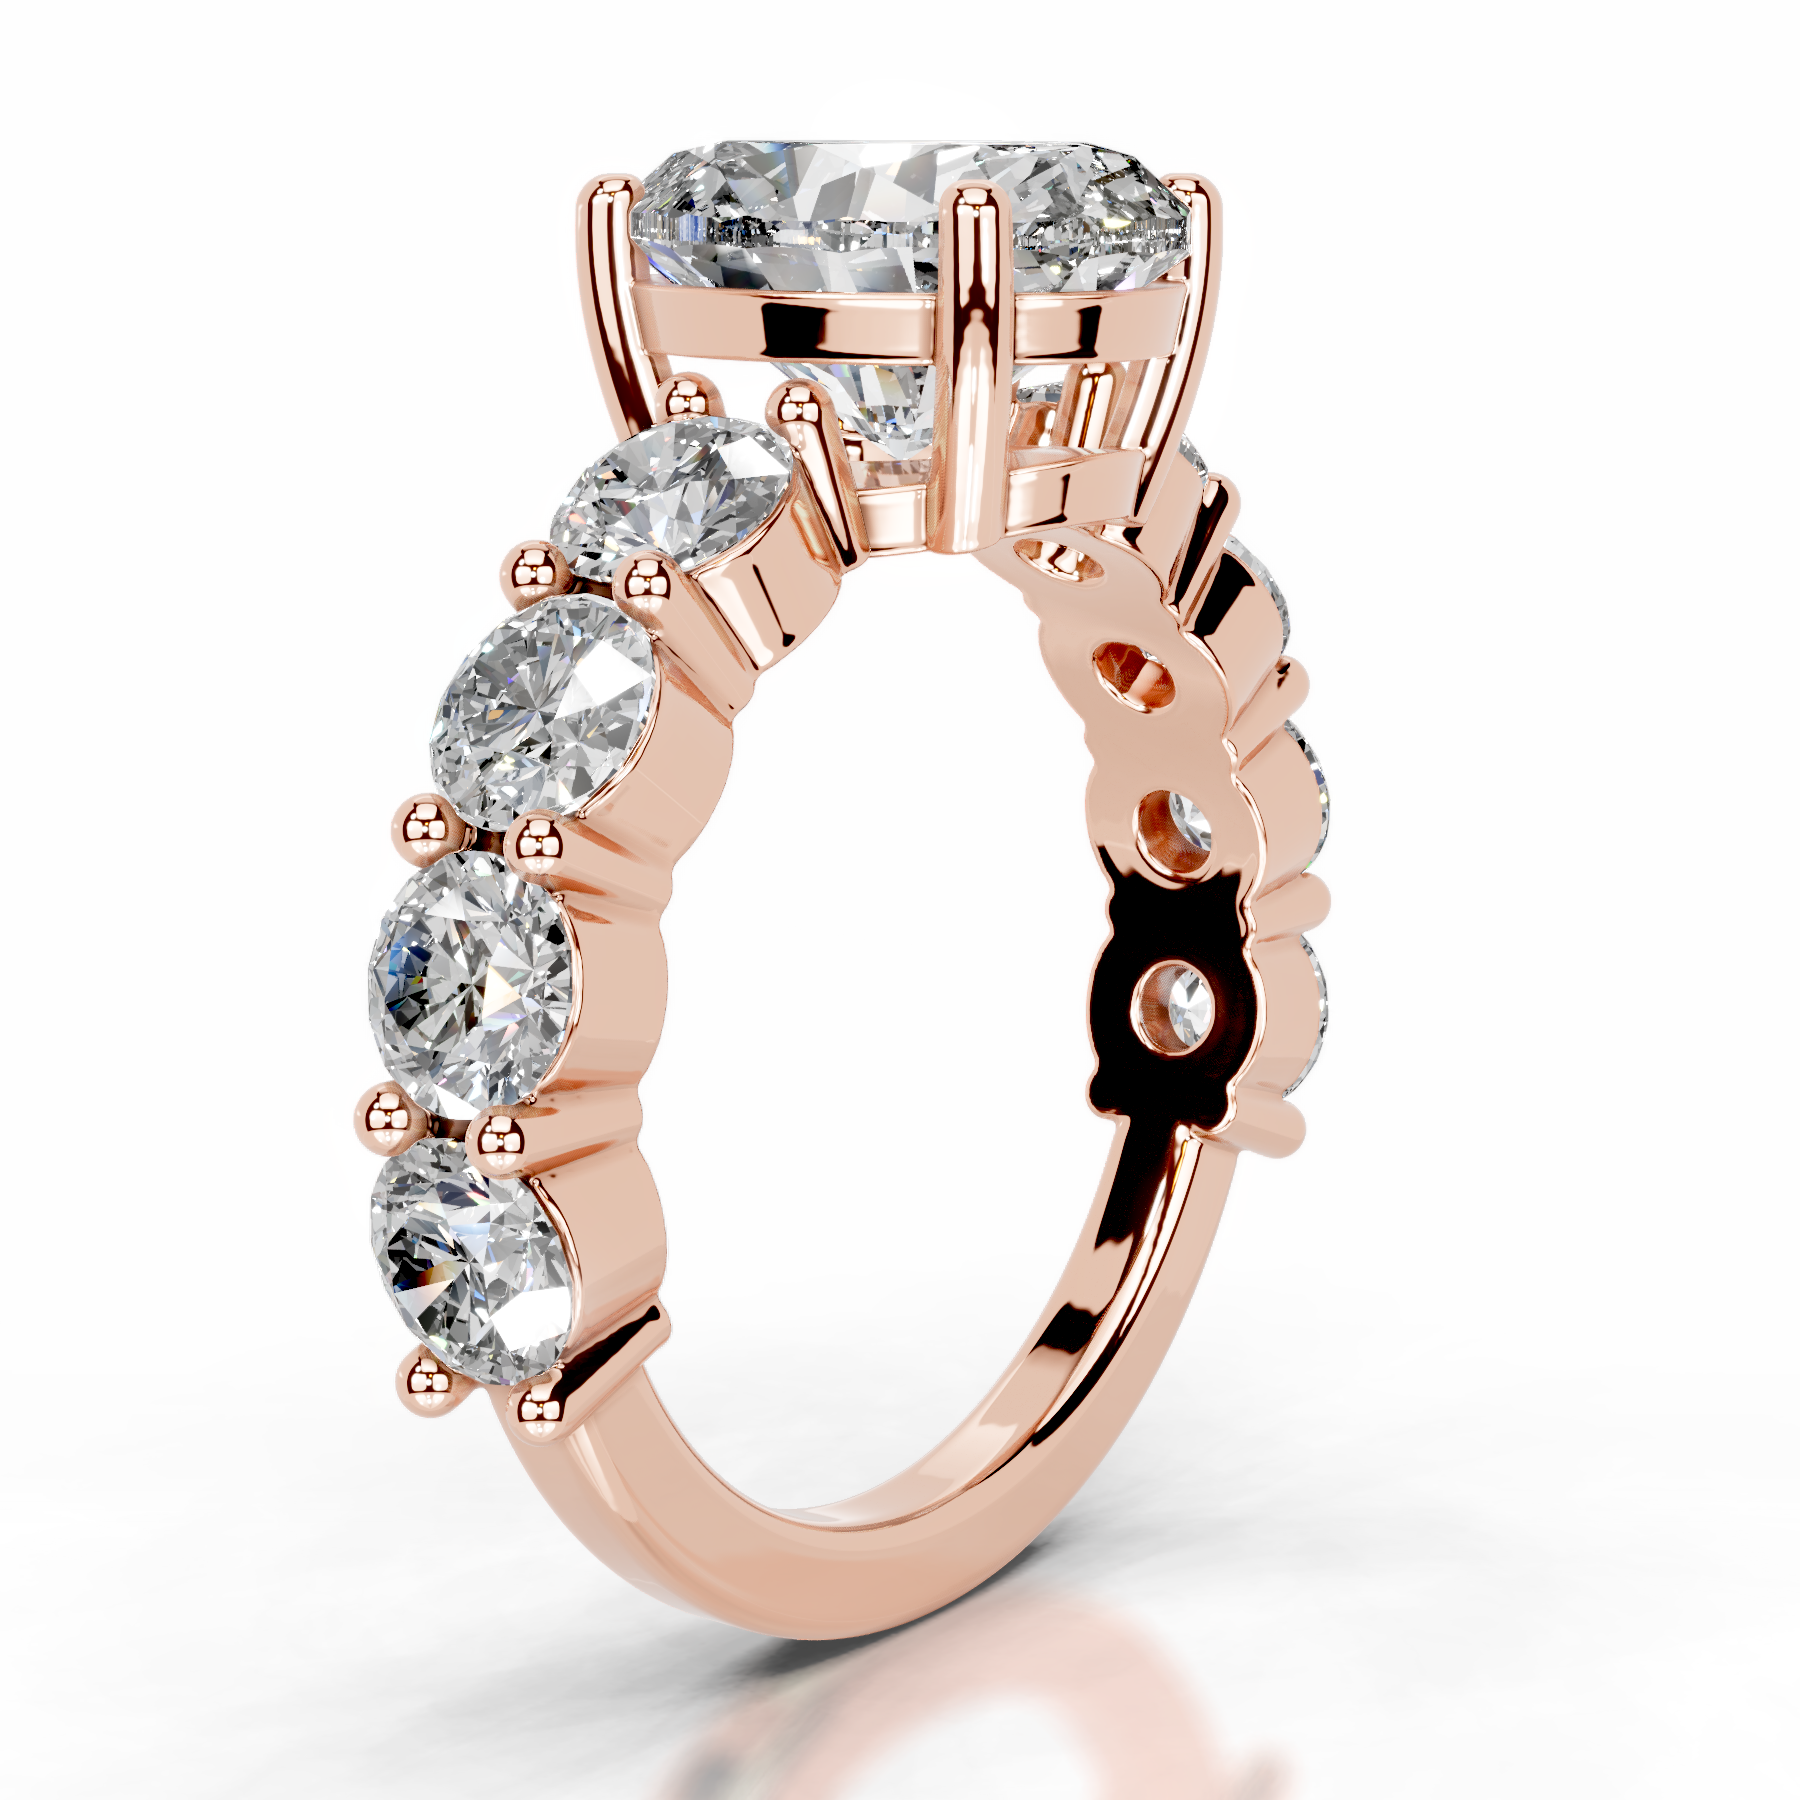 Odin Lab Grown Diamond Ring   (4 Carat) -14K Rose Gold